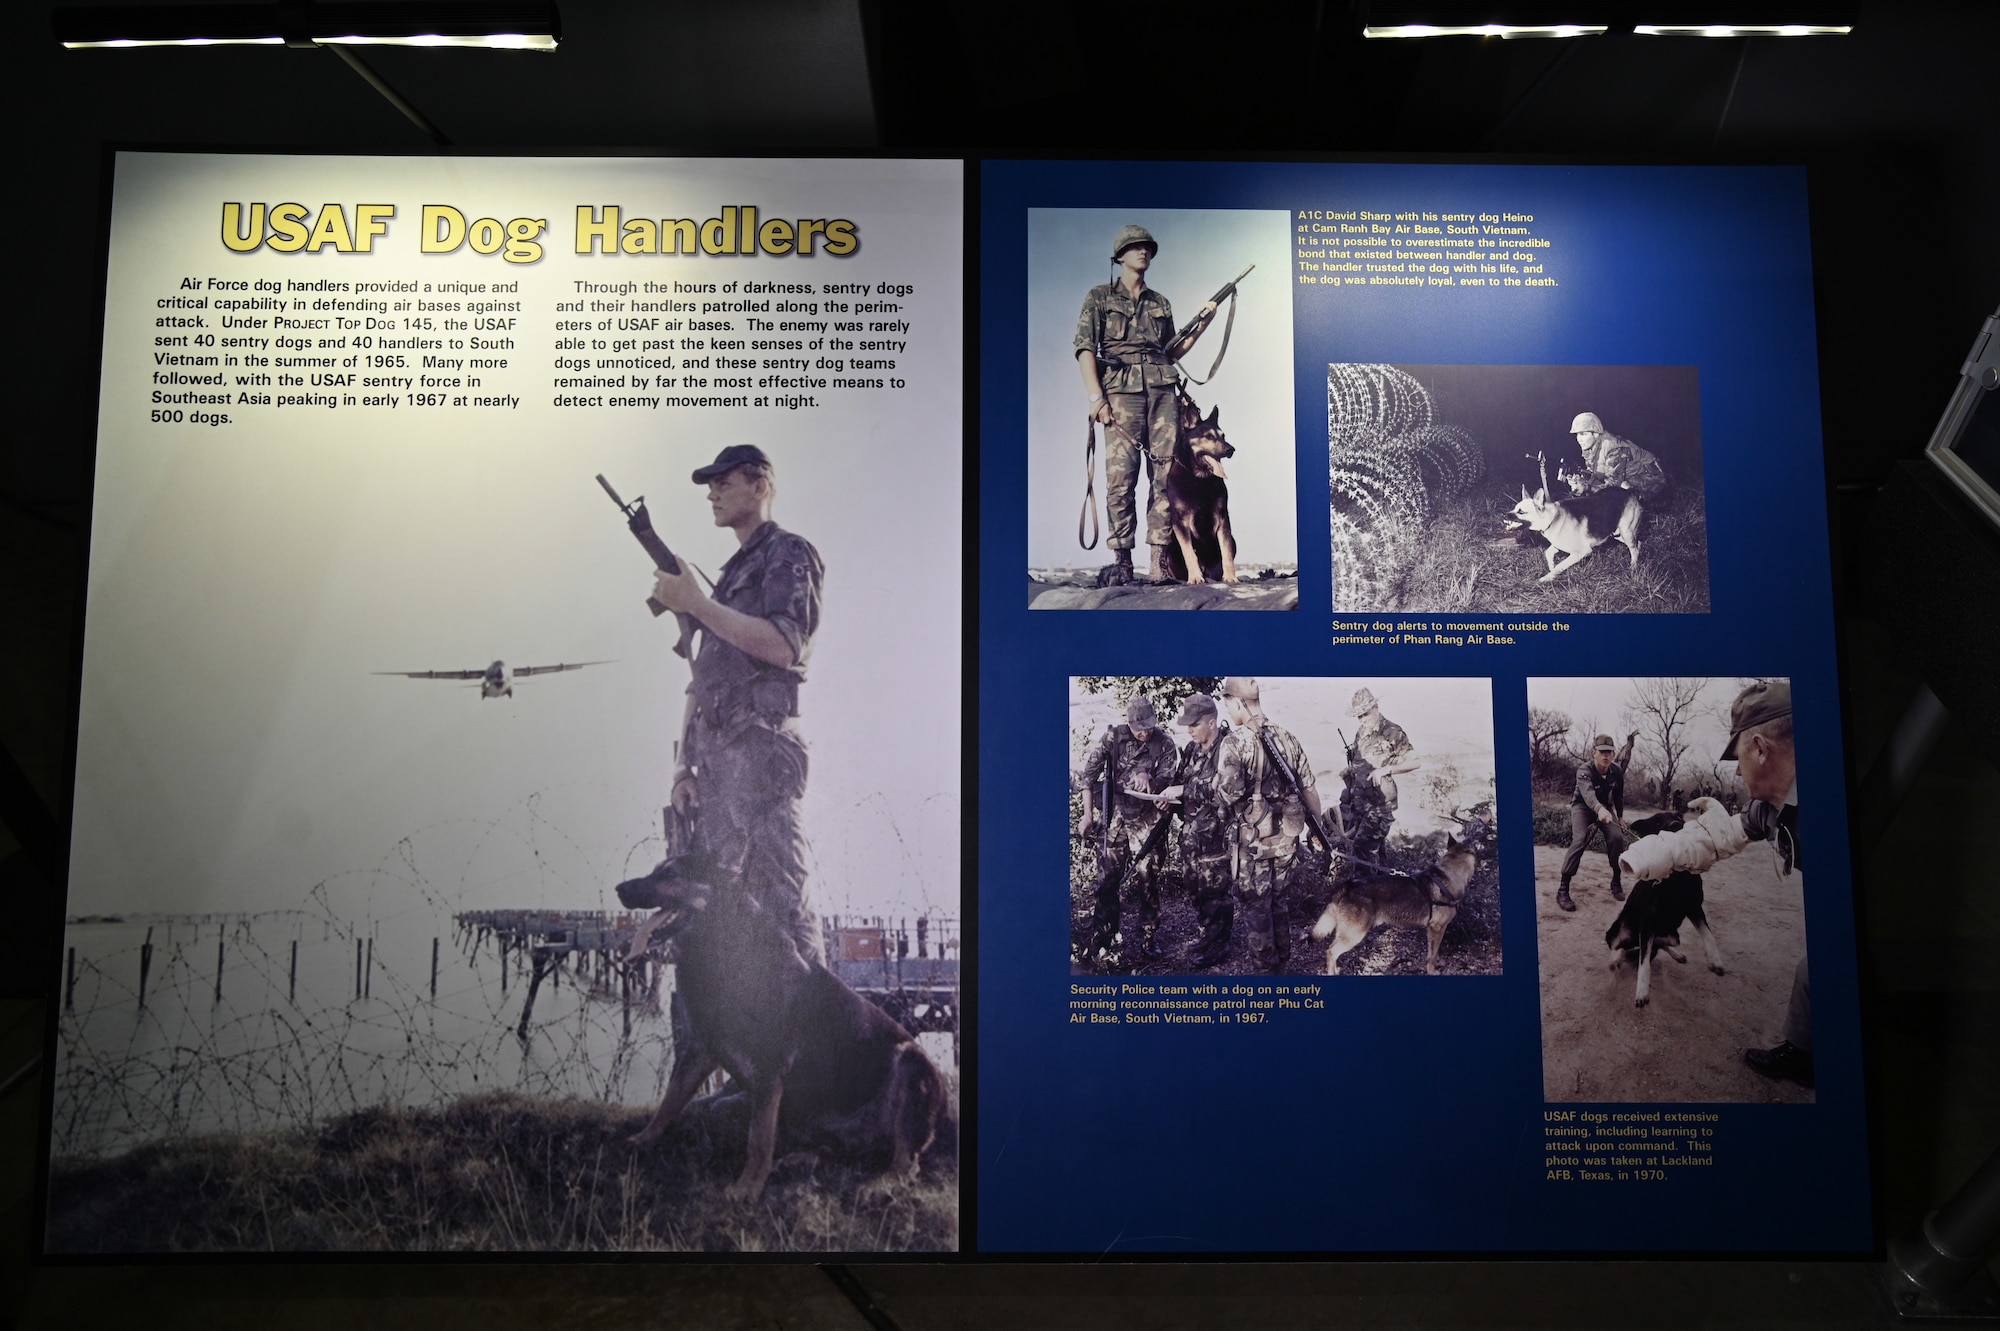 U.S. Air Force Dog Handlers